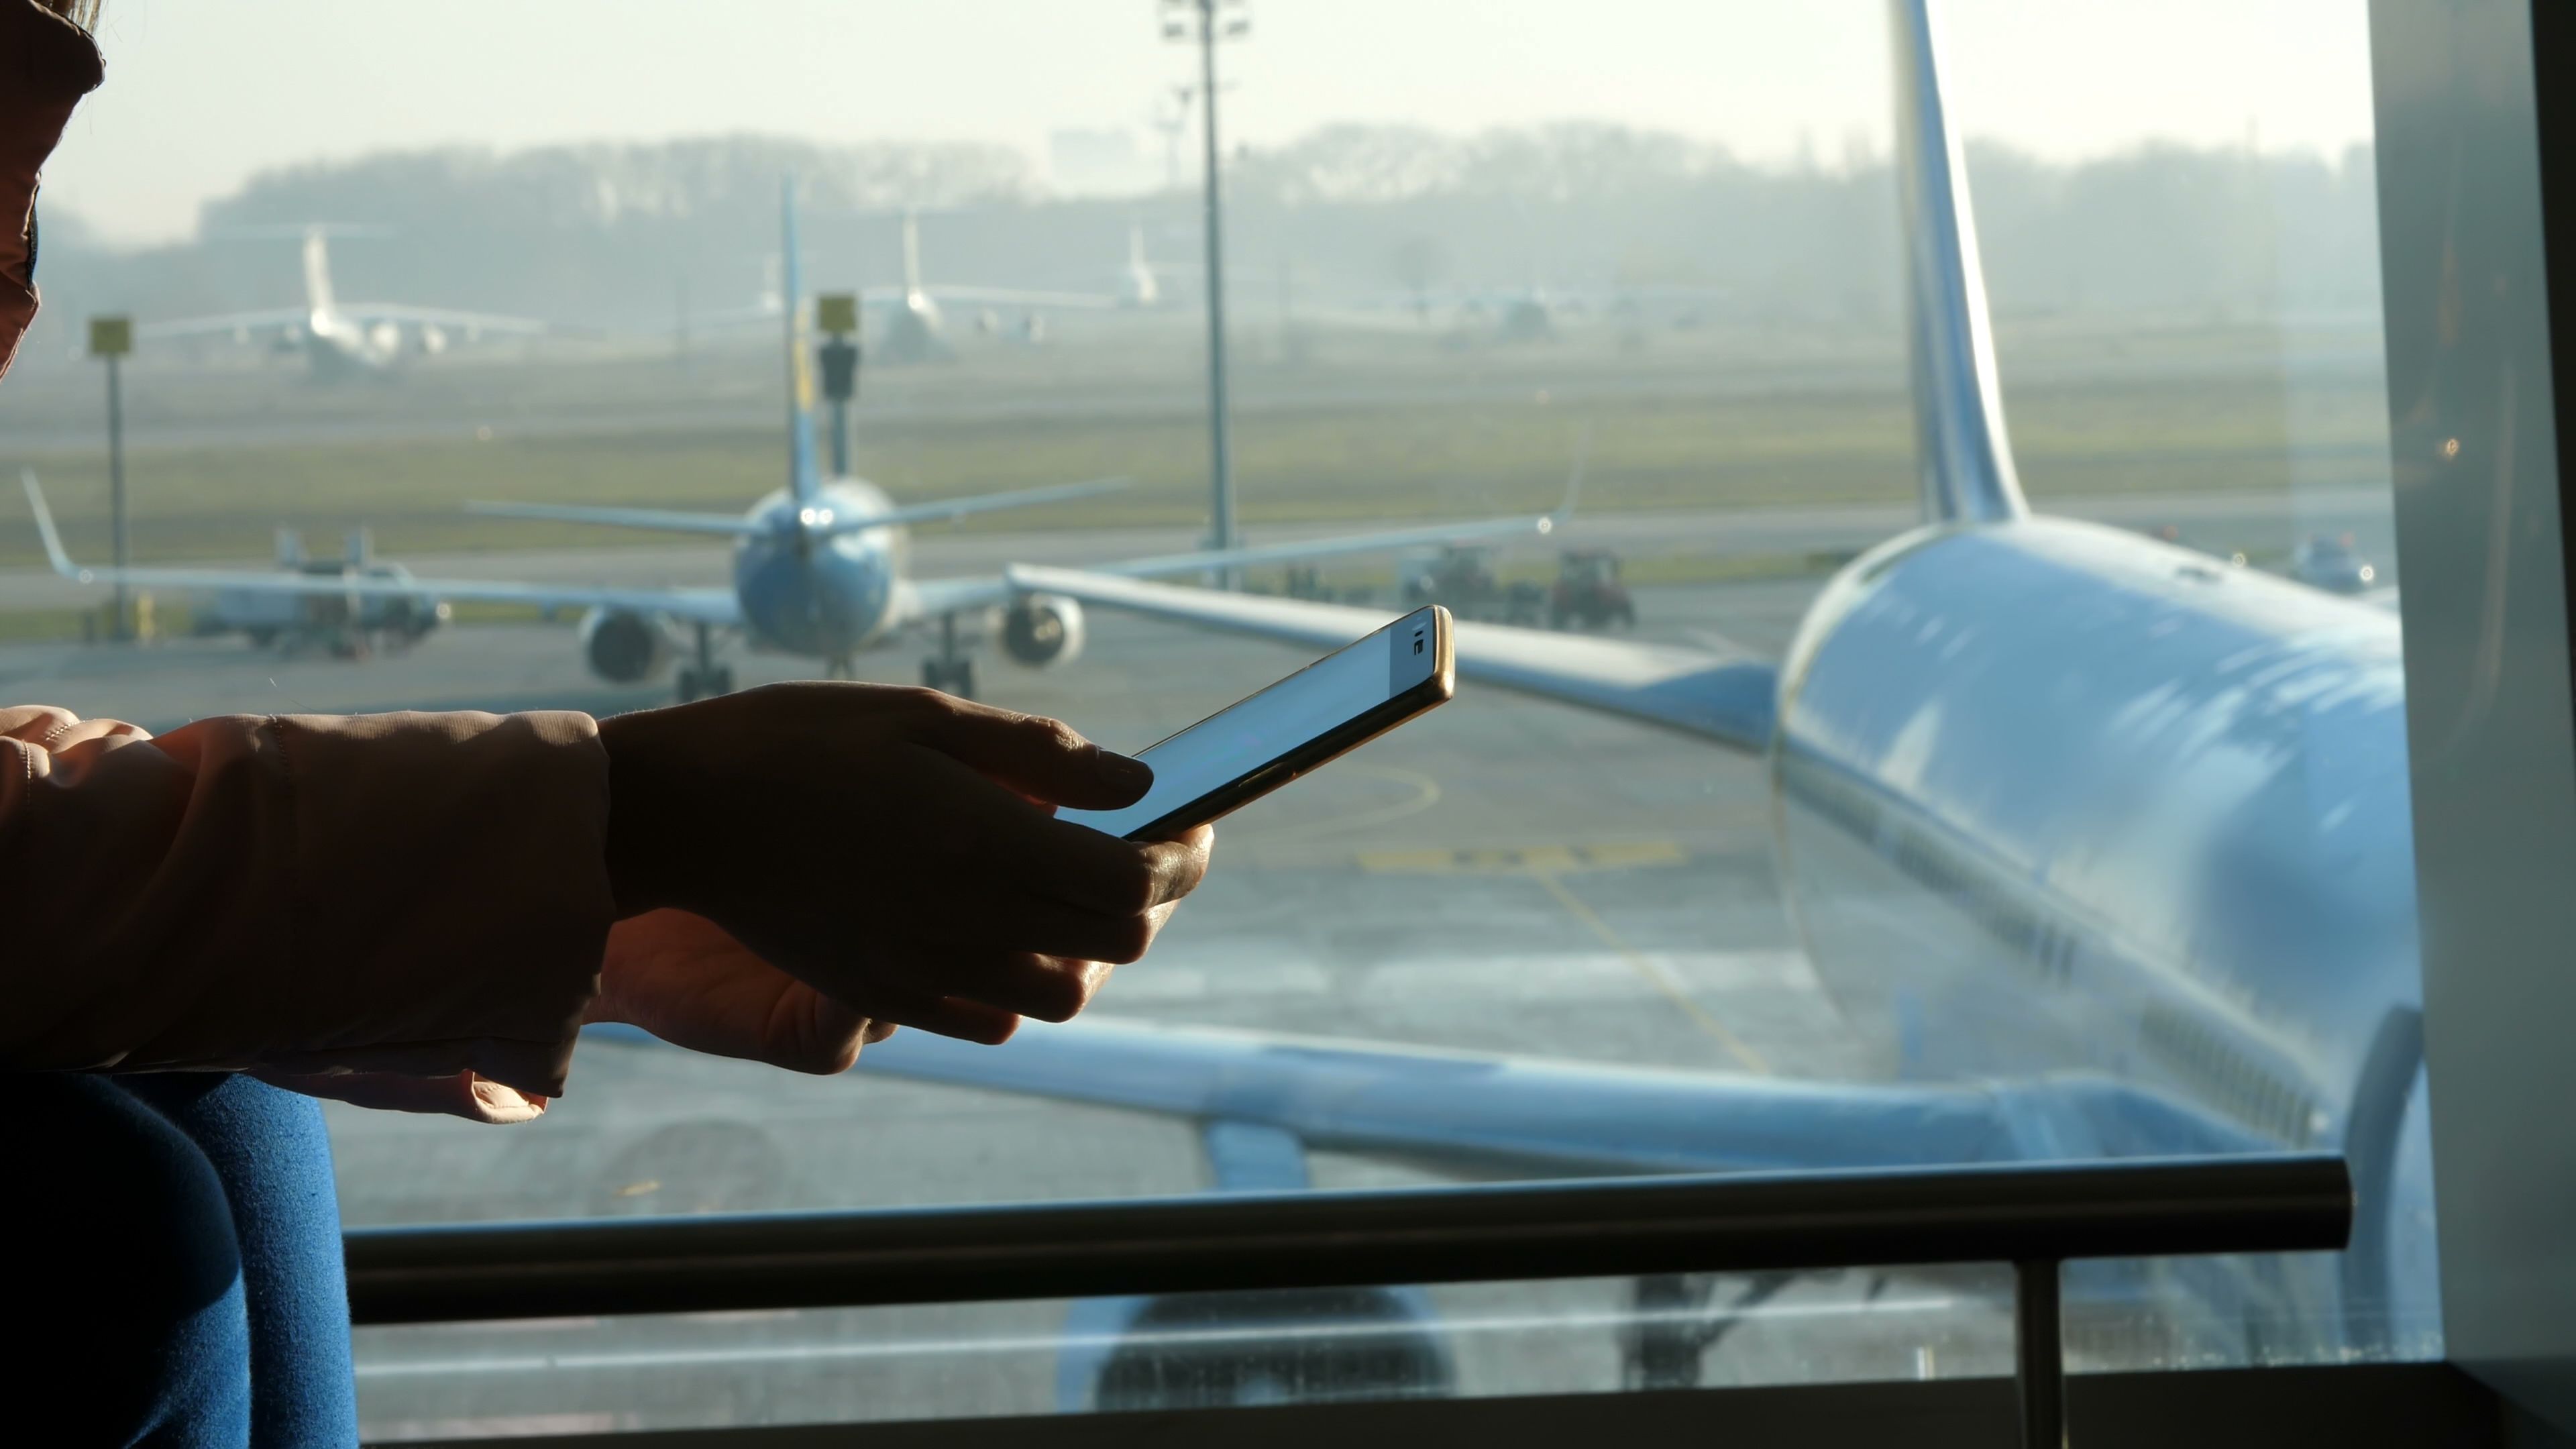 Adiós al modo avión: la UE permitirá acceder a redes 5G durante los vuelos. Foto: Bigstock